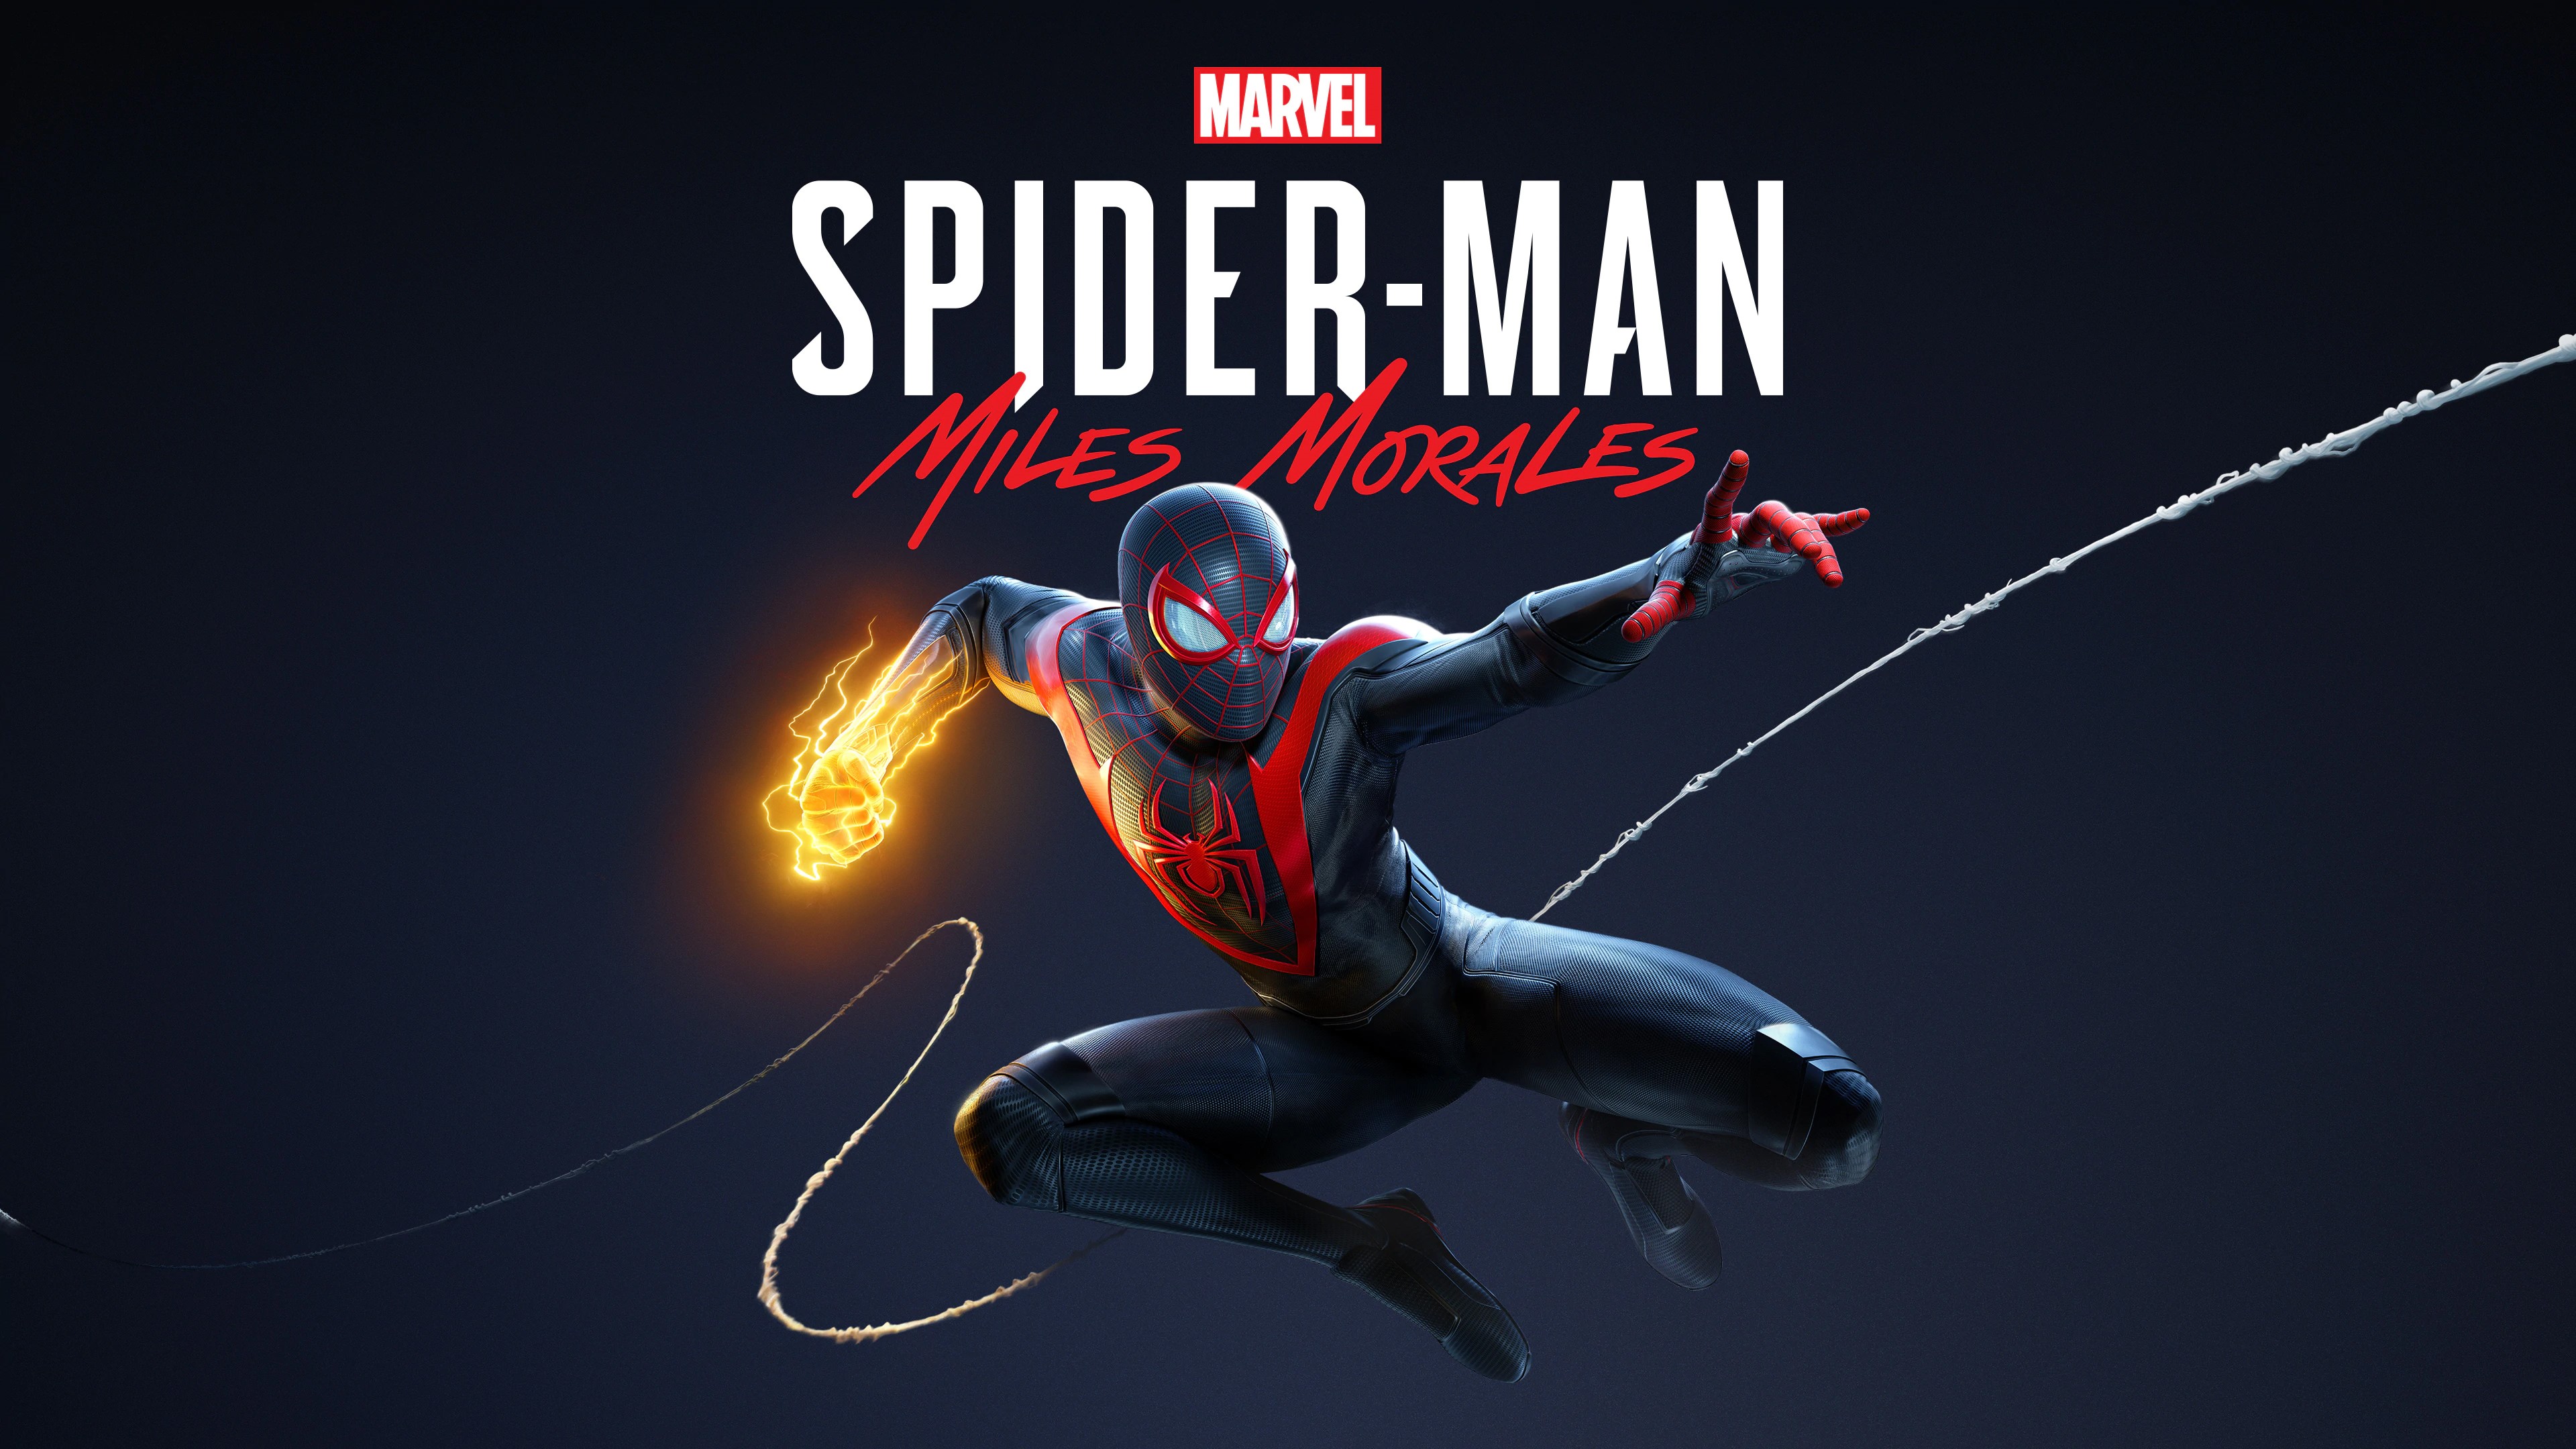 Marvel's Человек-паук /// Spider-Man: Miles Morales ( прохождение 4 )